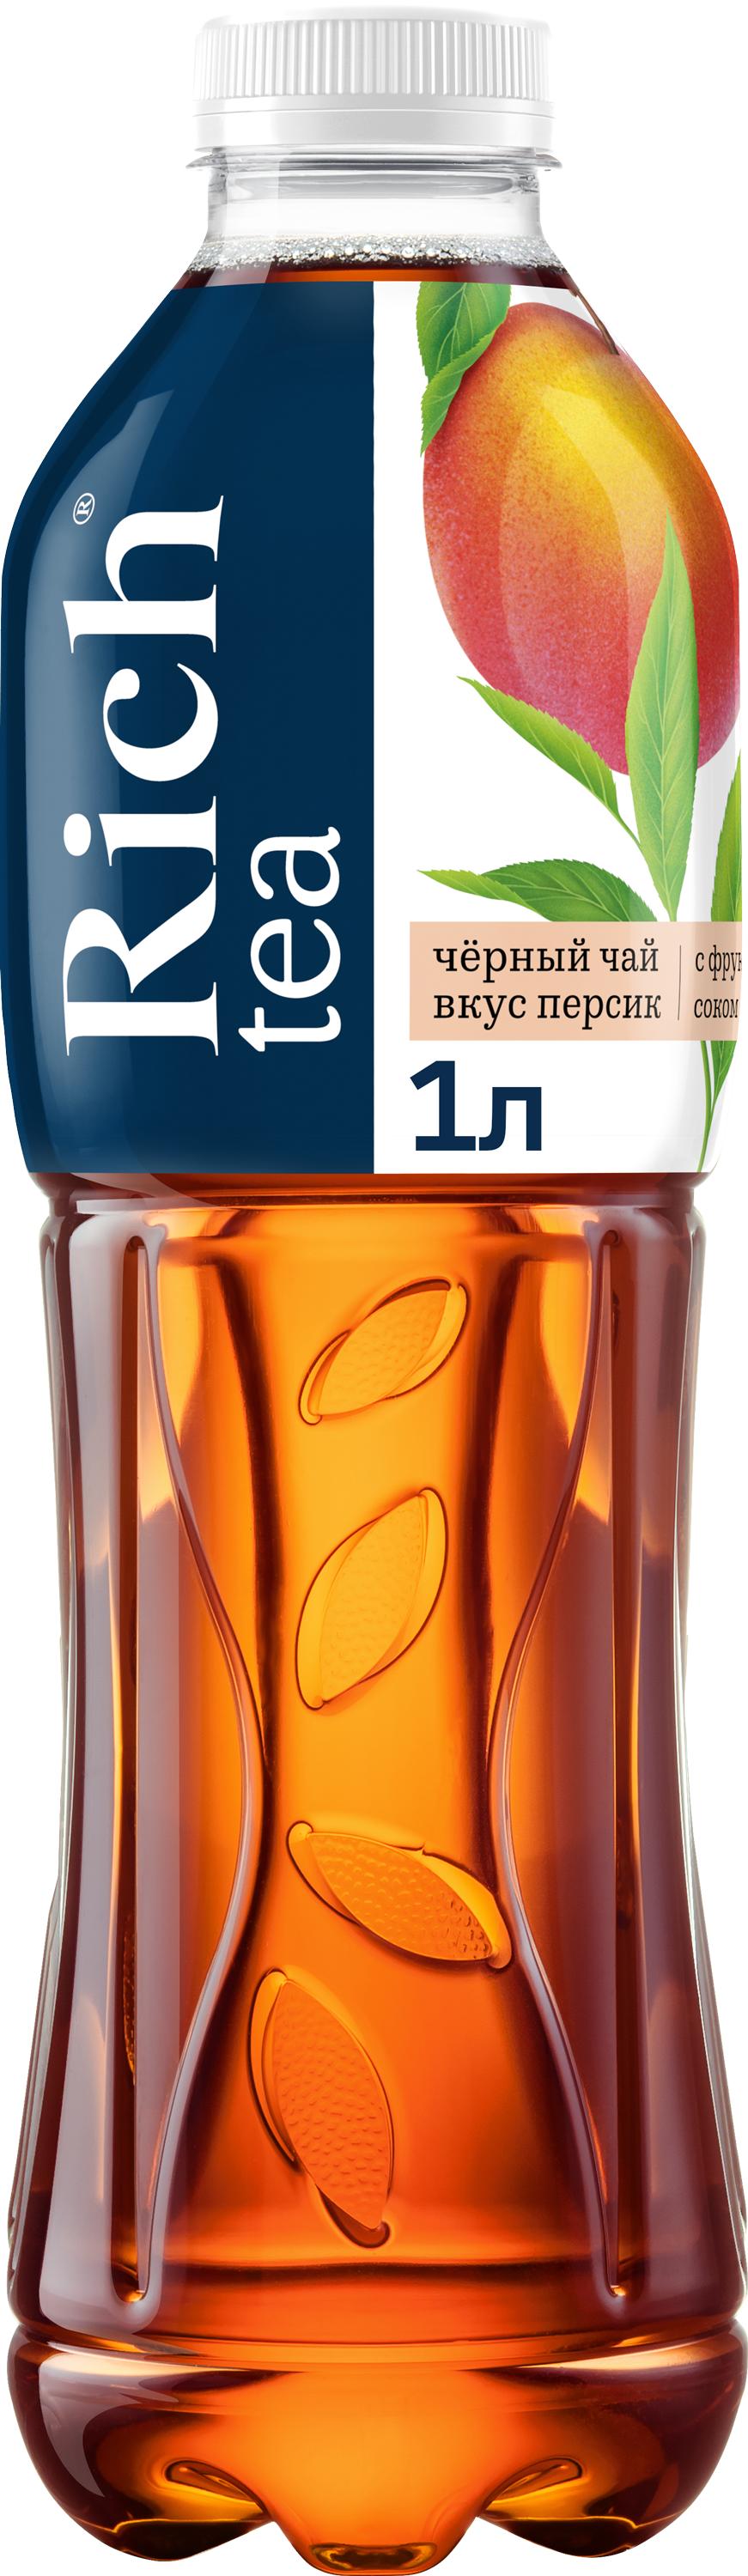 Черный чай Rich tea со вкусом Персика 1 л., ПЭТ